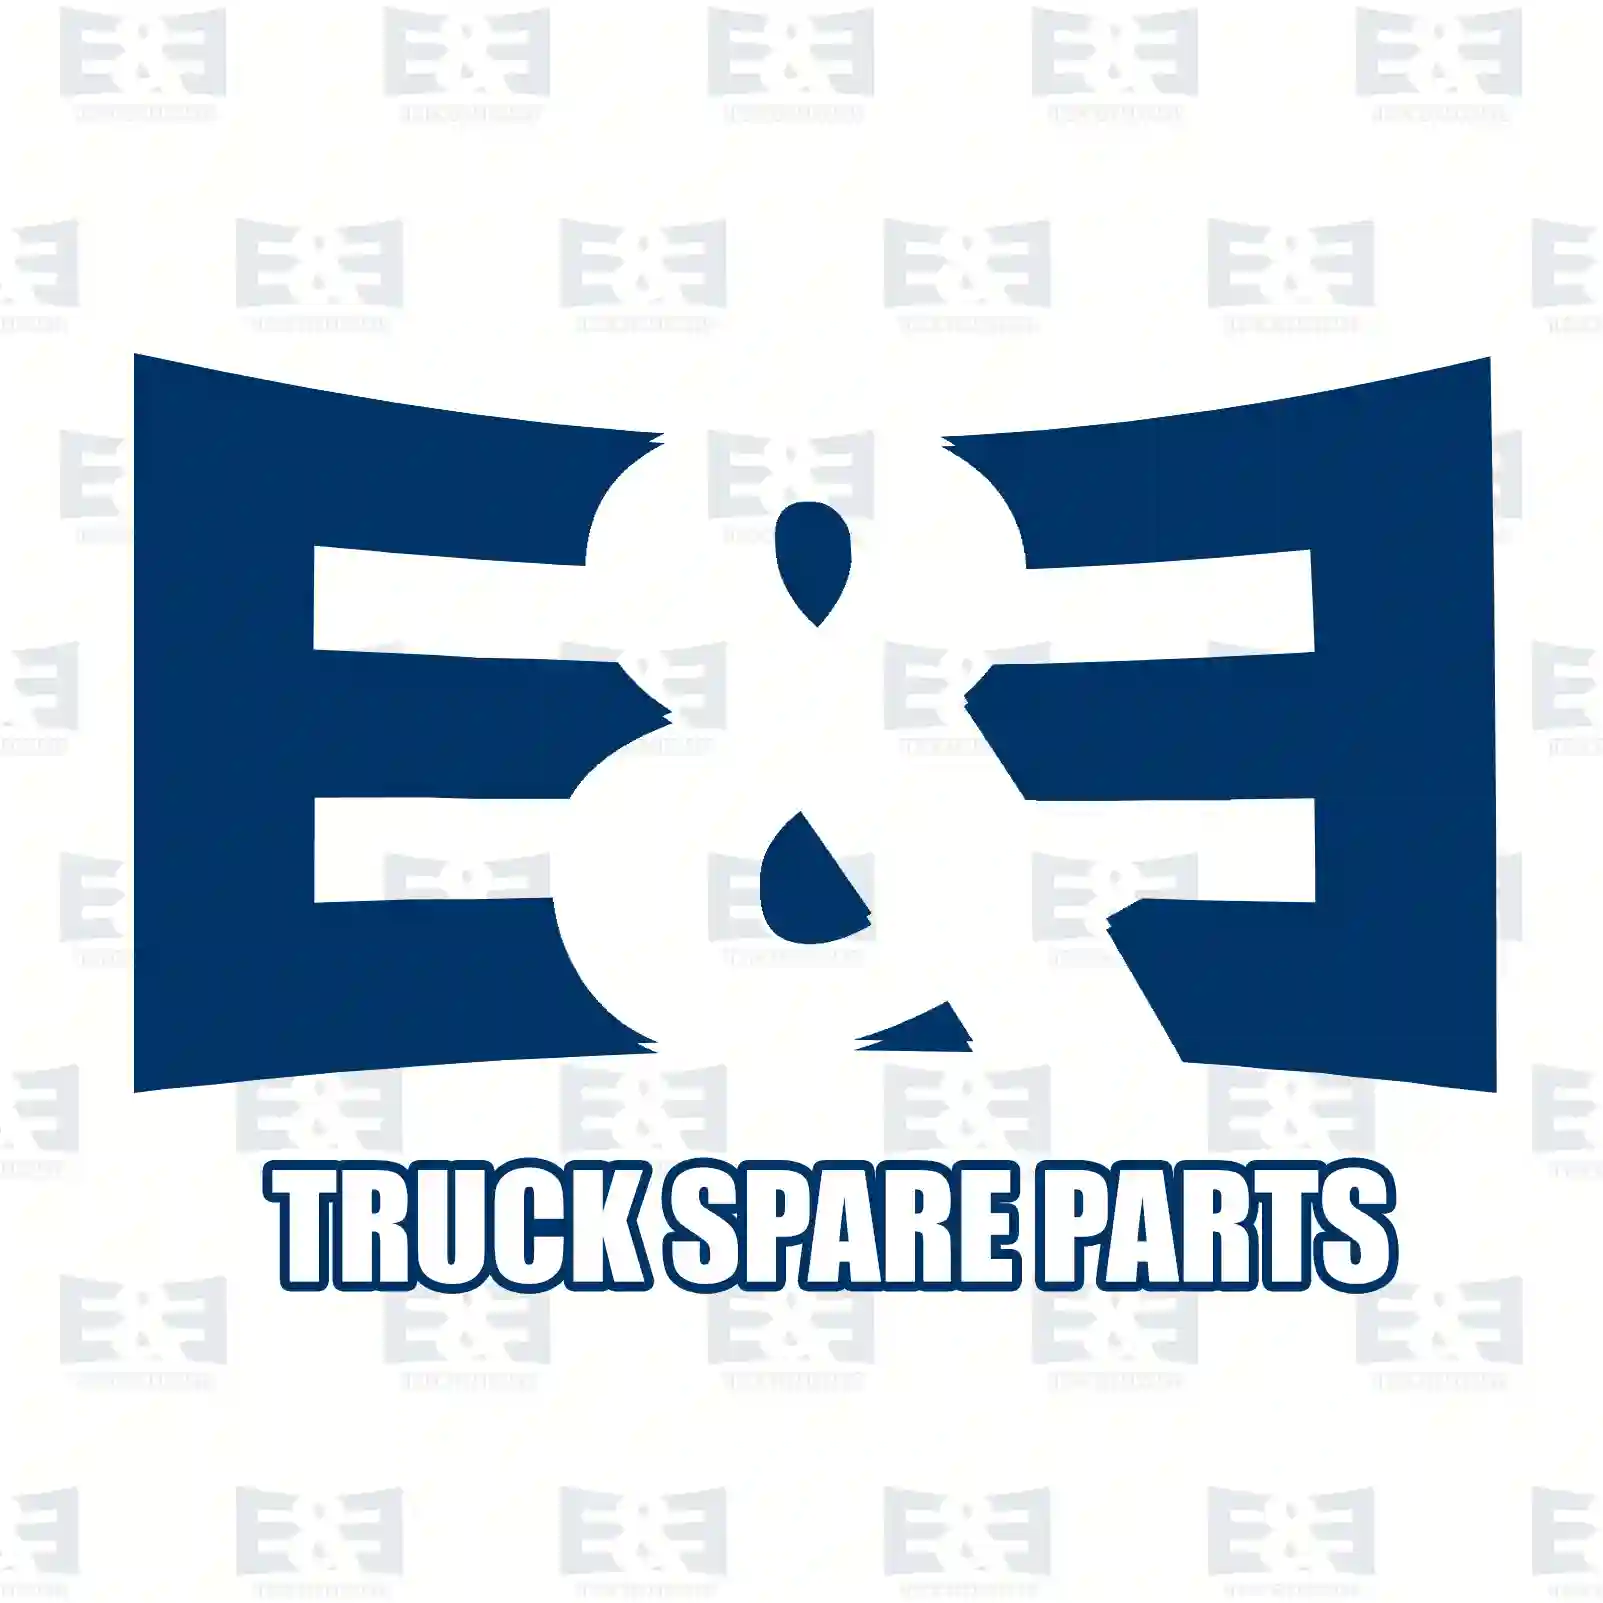 Solenoid valve, air dryer, 2E2294396, 20466522S1, 20700794S1, 20873849S1, 20884103S1, 21398254S1, 21480094S1, 21489991S, 21620172S1, 85003628S1, 85013131S1 ||  2E2294396 E&E Truck Spare Parts | Truck Spare Parts, Auotomotive Spare Parts Solenoid valve, air dryer, 2E2294396, 20466522S1, 20700794S1, 20873849S1, 20884103S1, 21398254S1, 21480094S1, 21489991S, 21620172S1, 85003628S1, 85013131S1 ||  2E2294396 E&E Truck Spare Parts | Truck Spare Parts, Auotomotive Spare Parts